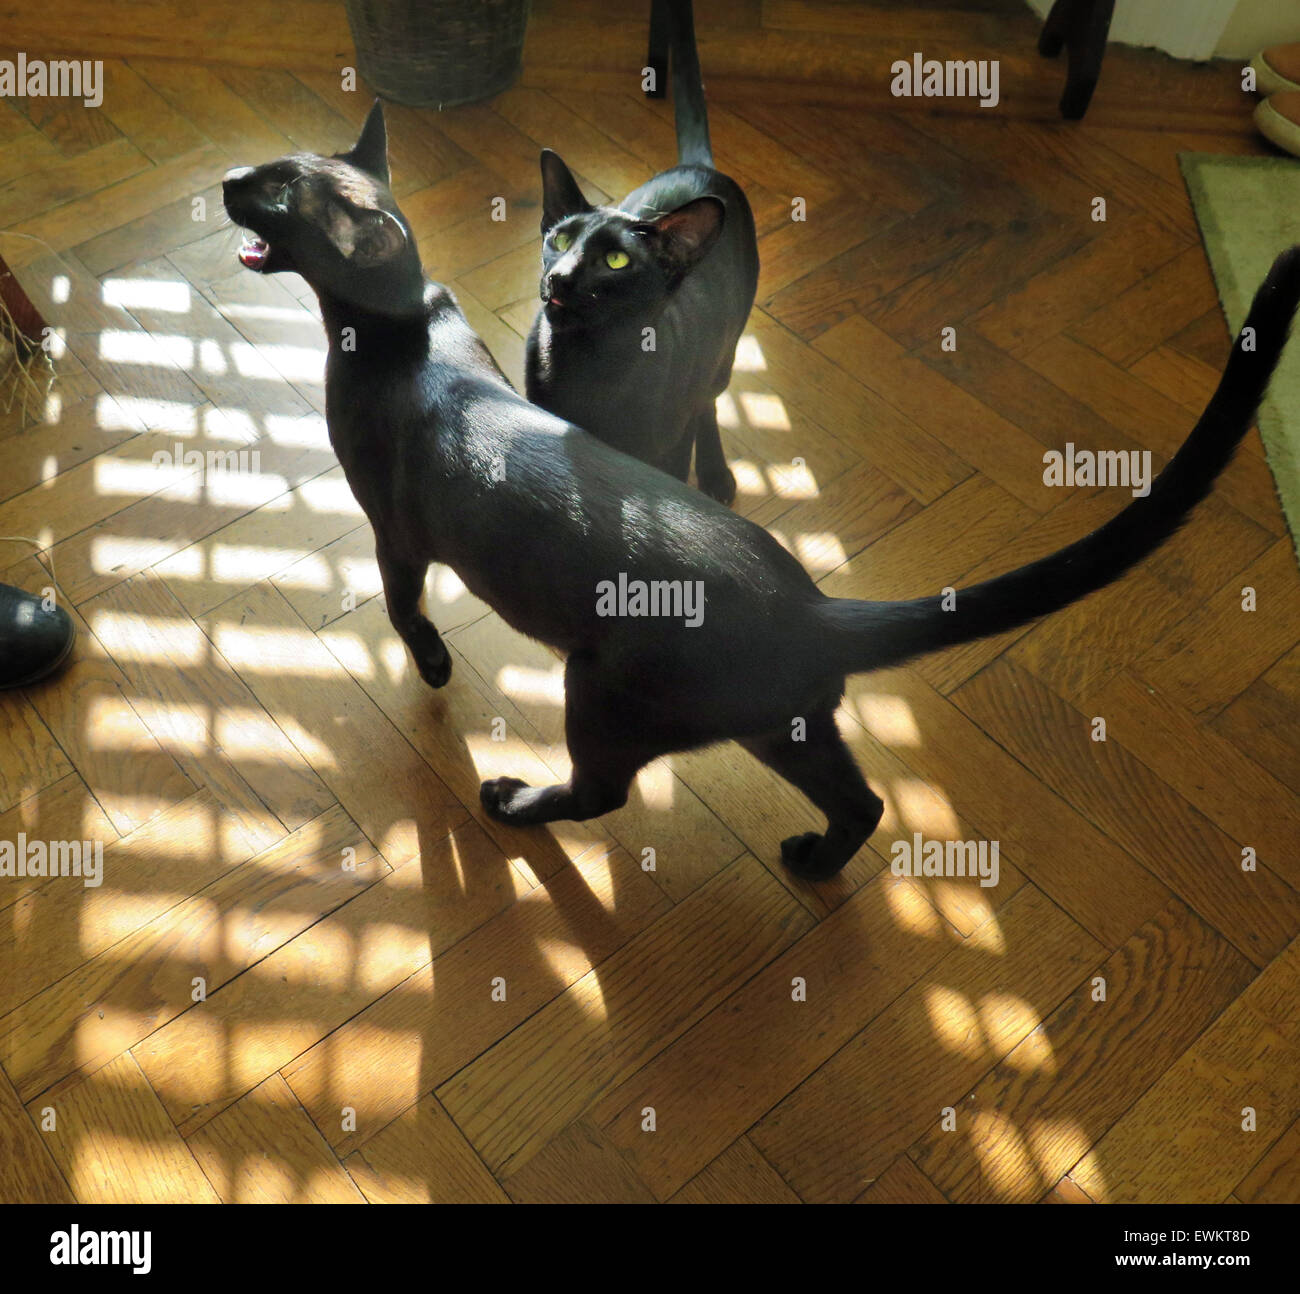 Schwarze orientalische siamesische Kätzchen - ein Jahr alt - an einem sonnigen Tag auf Parkettboden, Miauen für Lebensmittel. Stockfoto